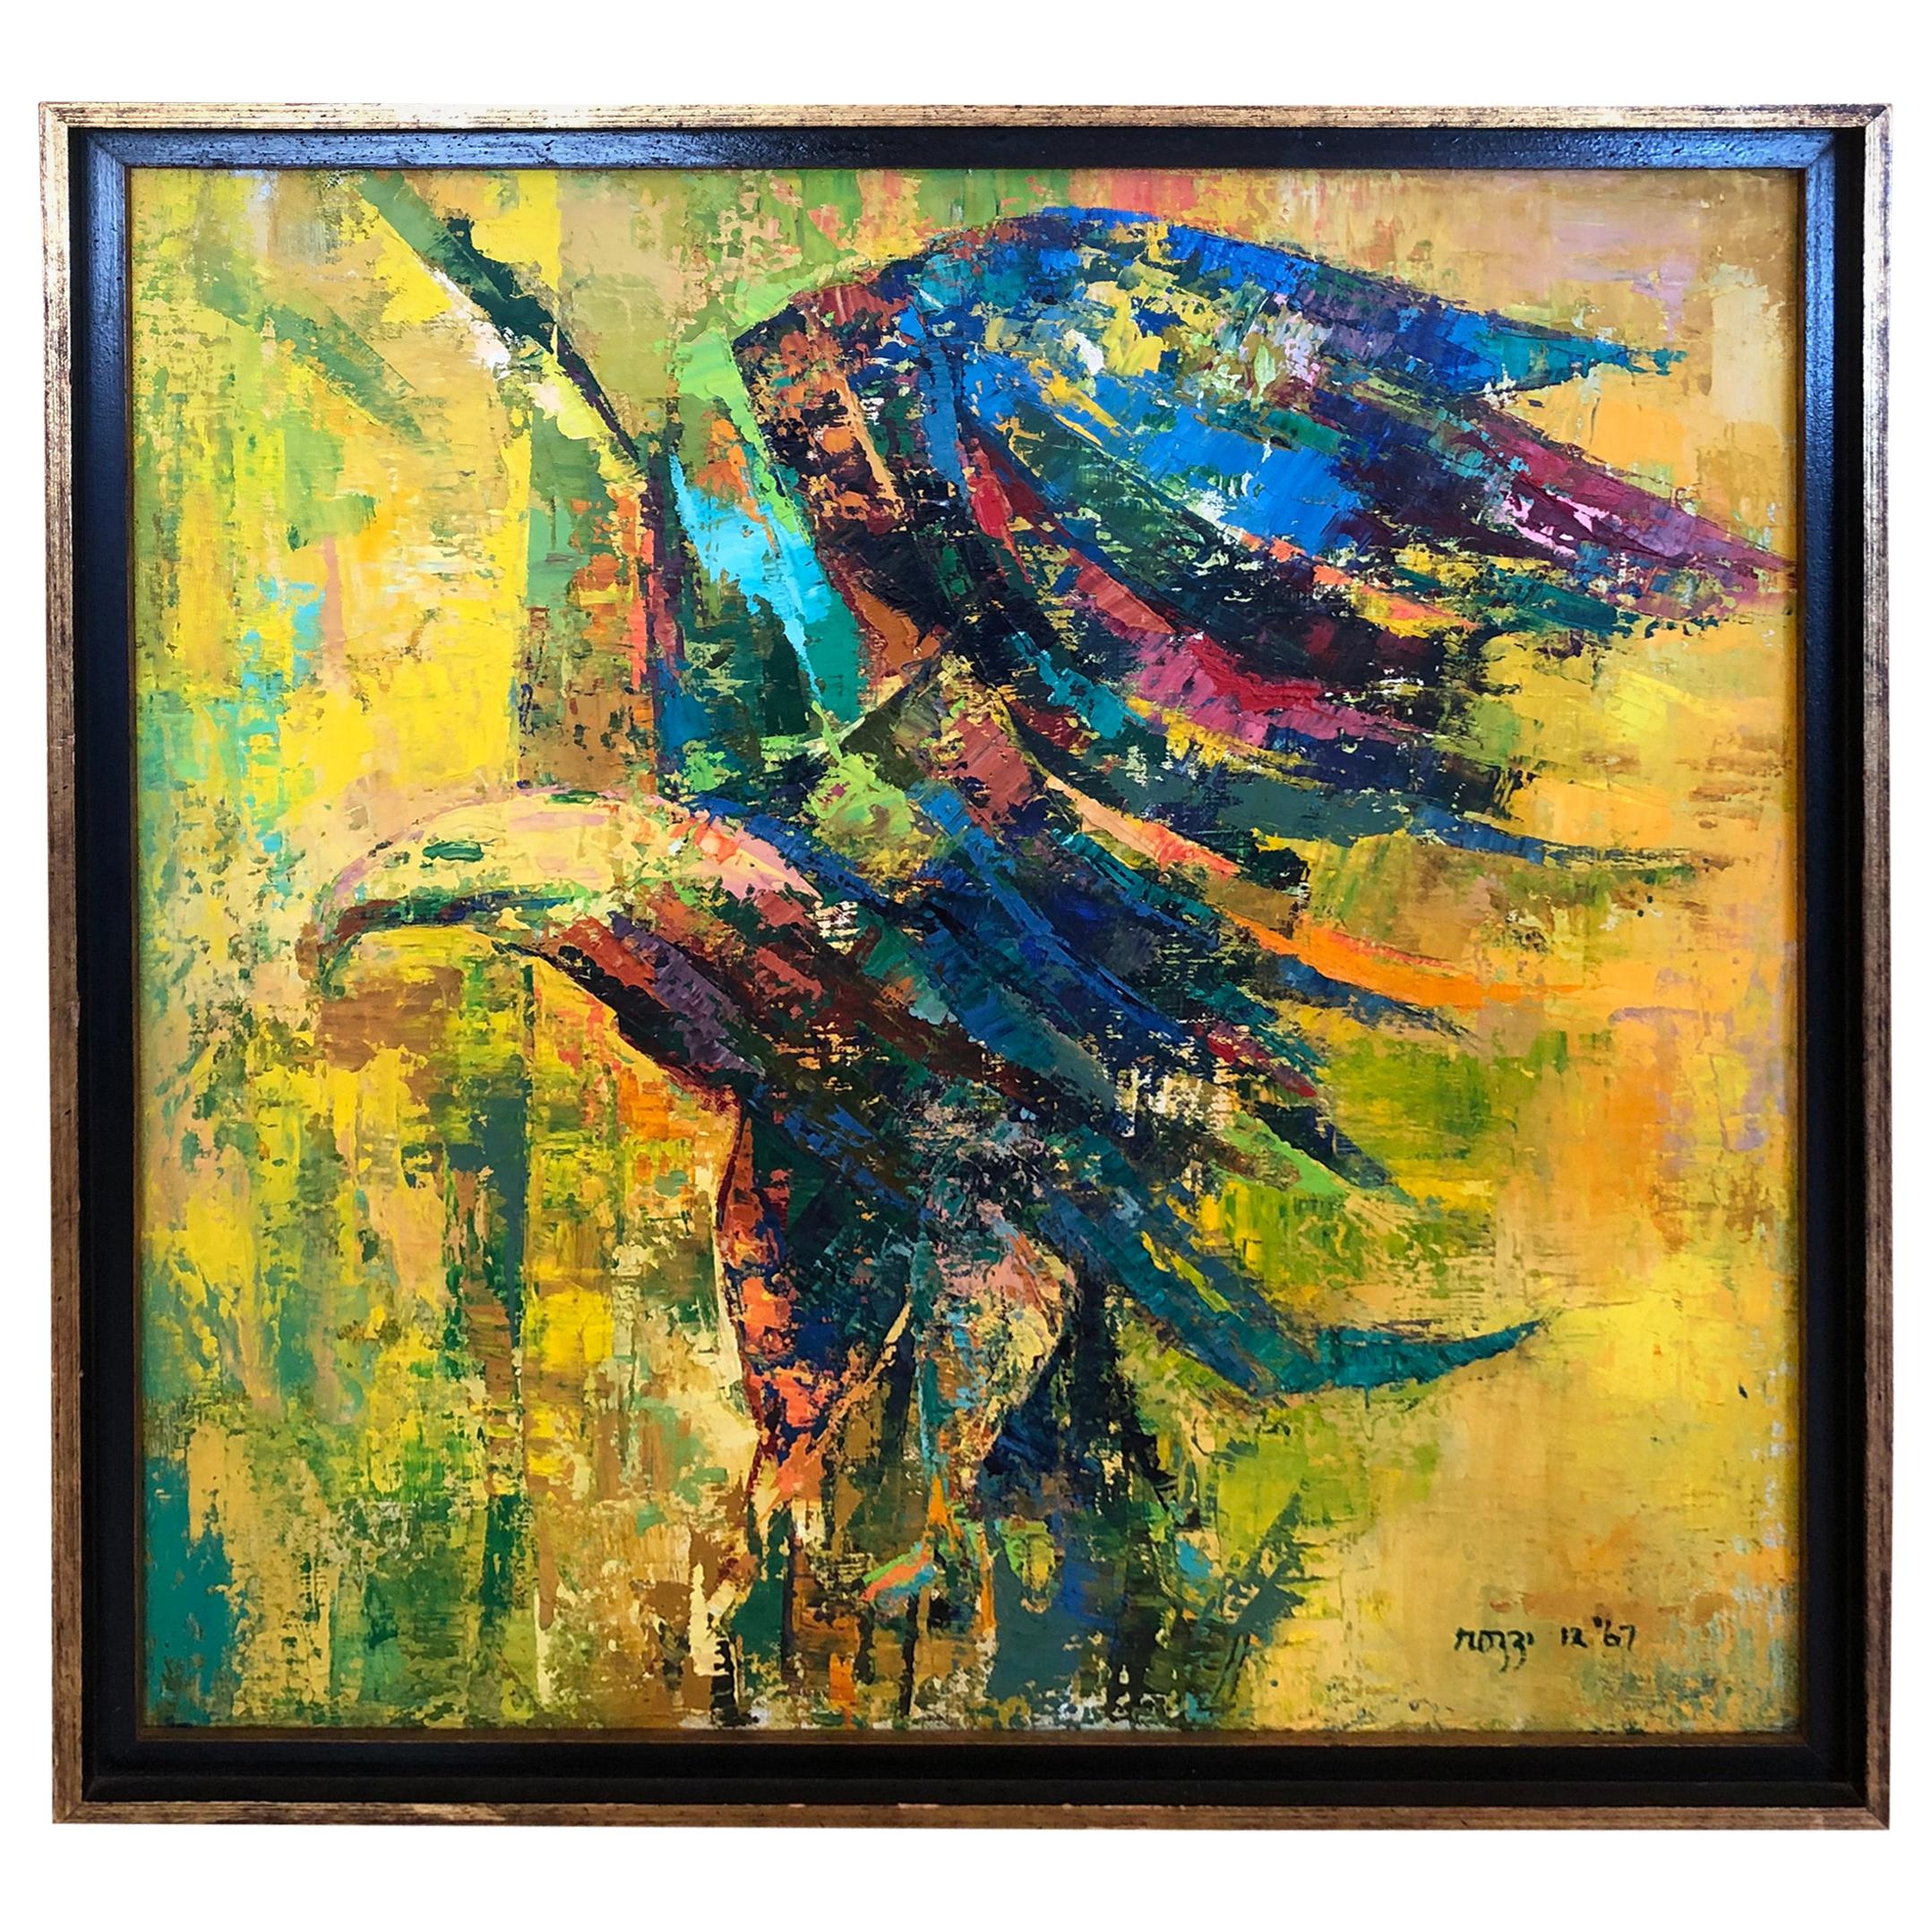 Remarquable peinture à l'huile originale et contemporaine d'un aigle